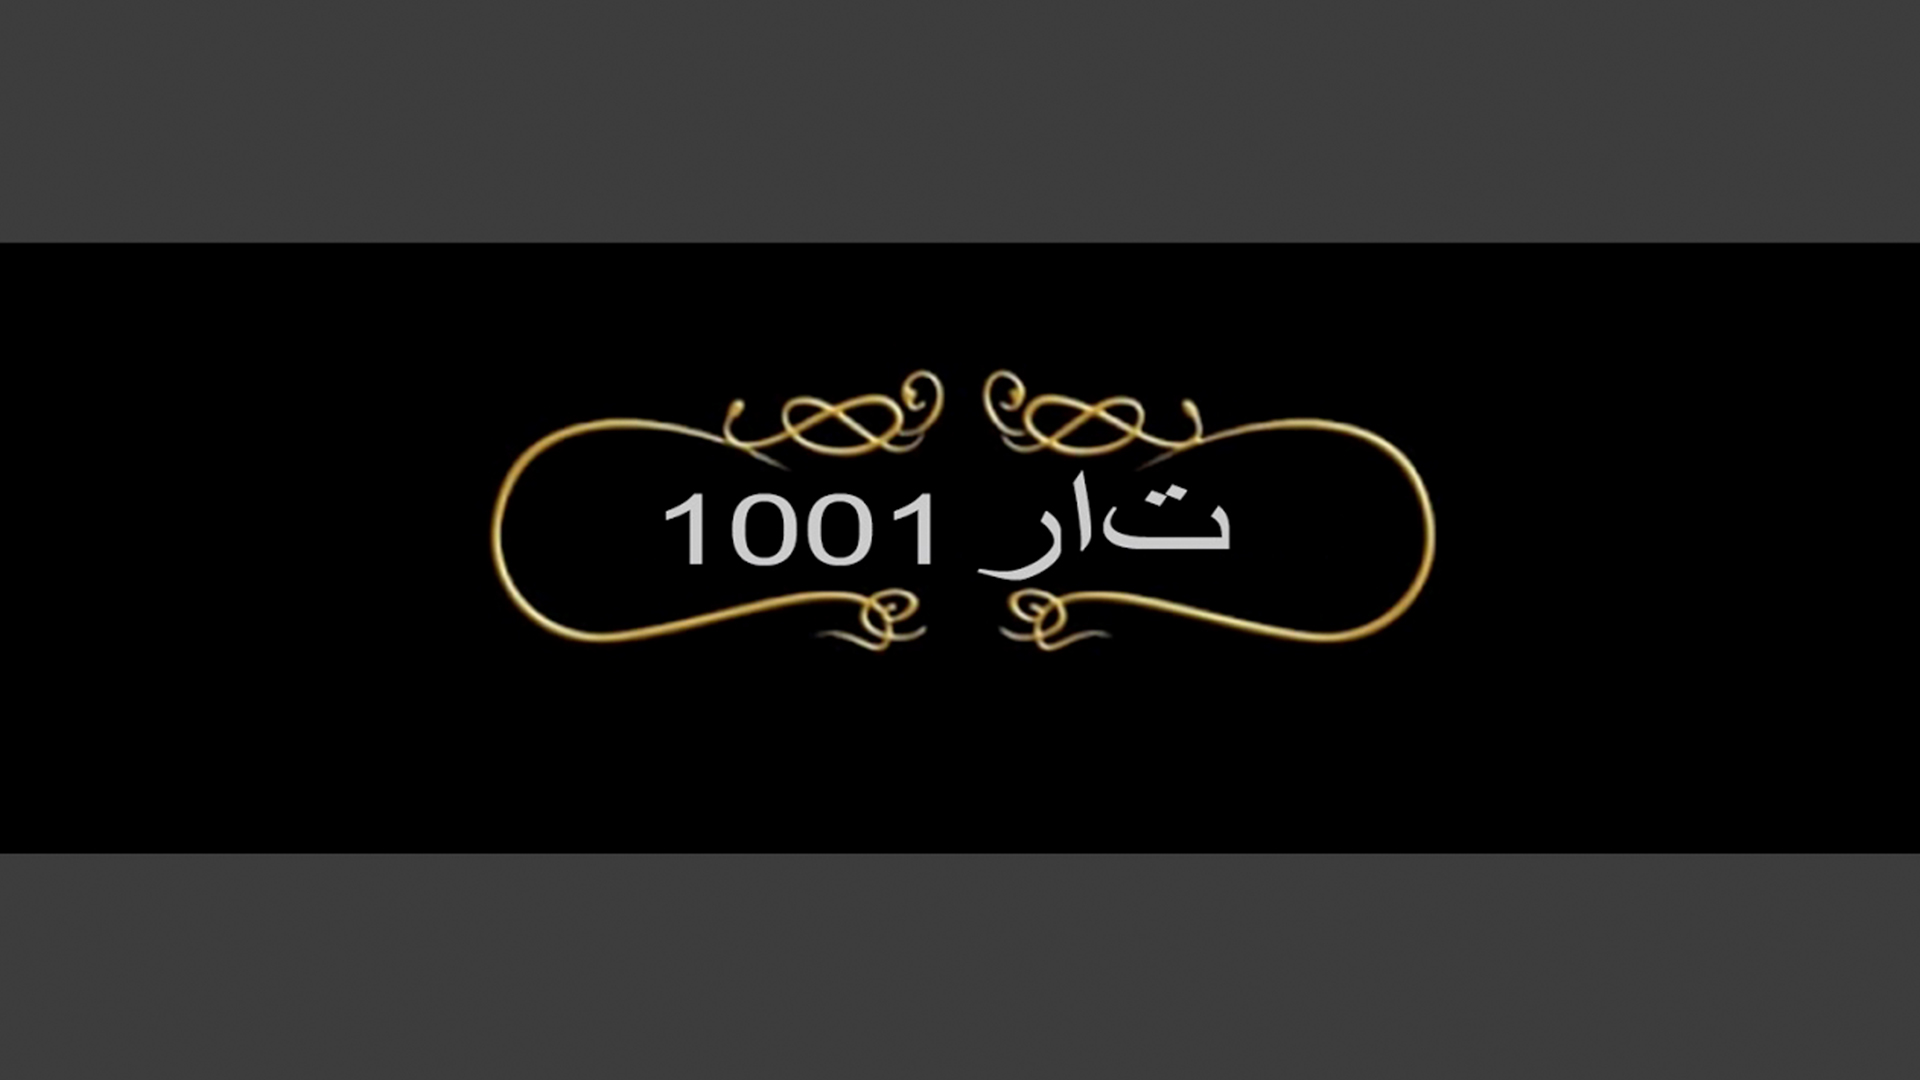 Sheharzaad 1001 Gece - Urdu